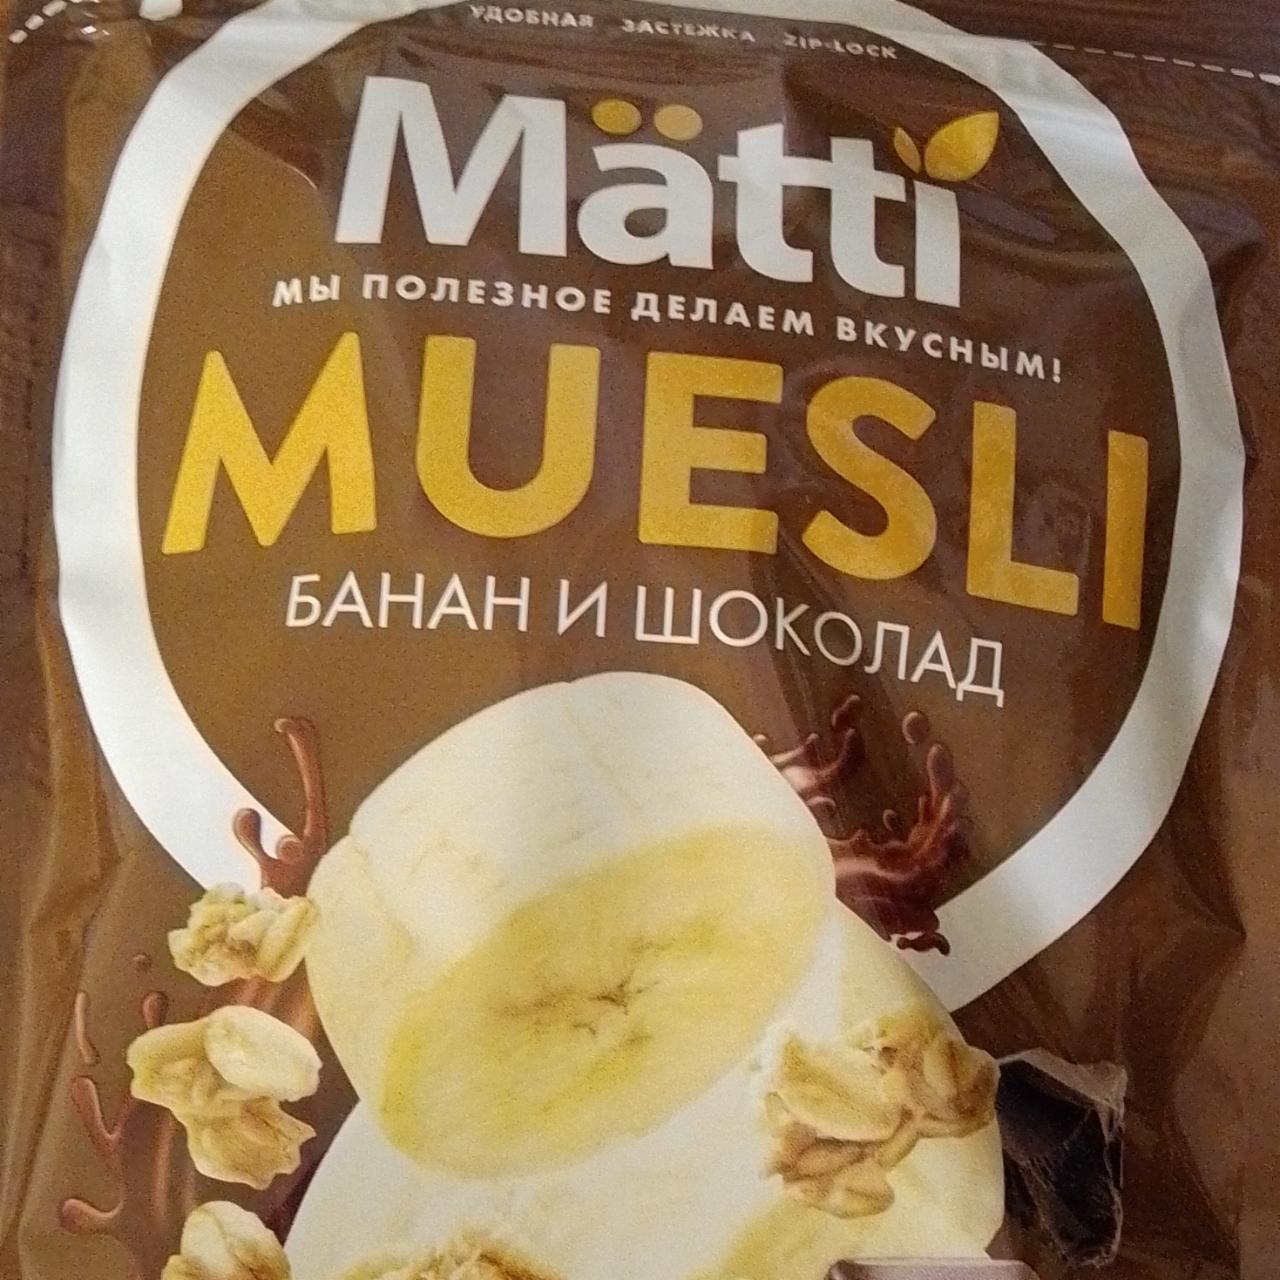 Фото - Мюсли с бананом и шоколадом Matti